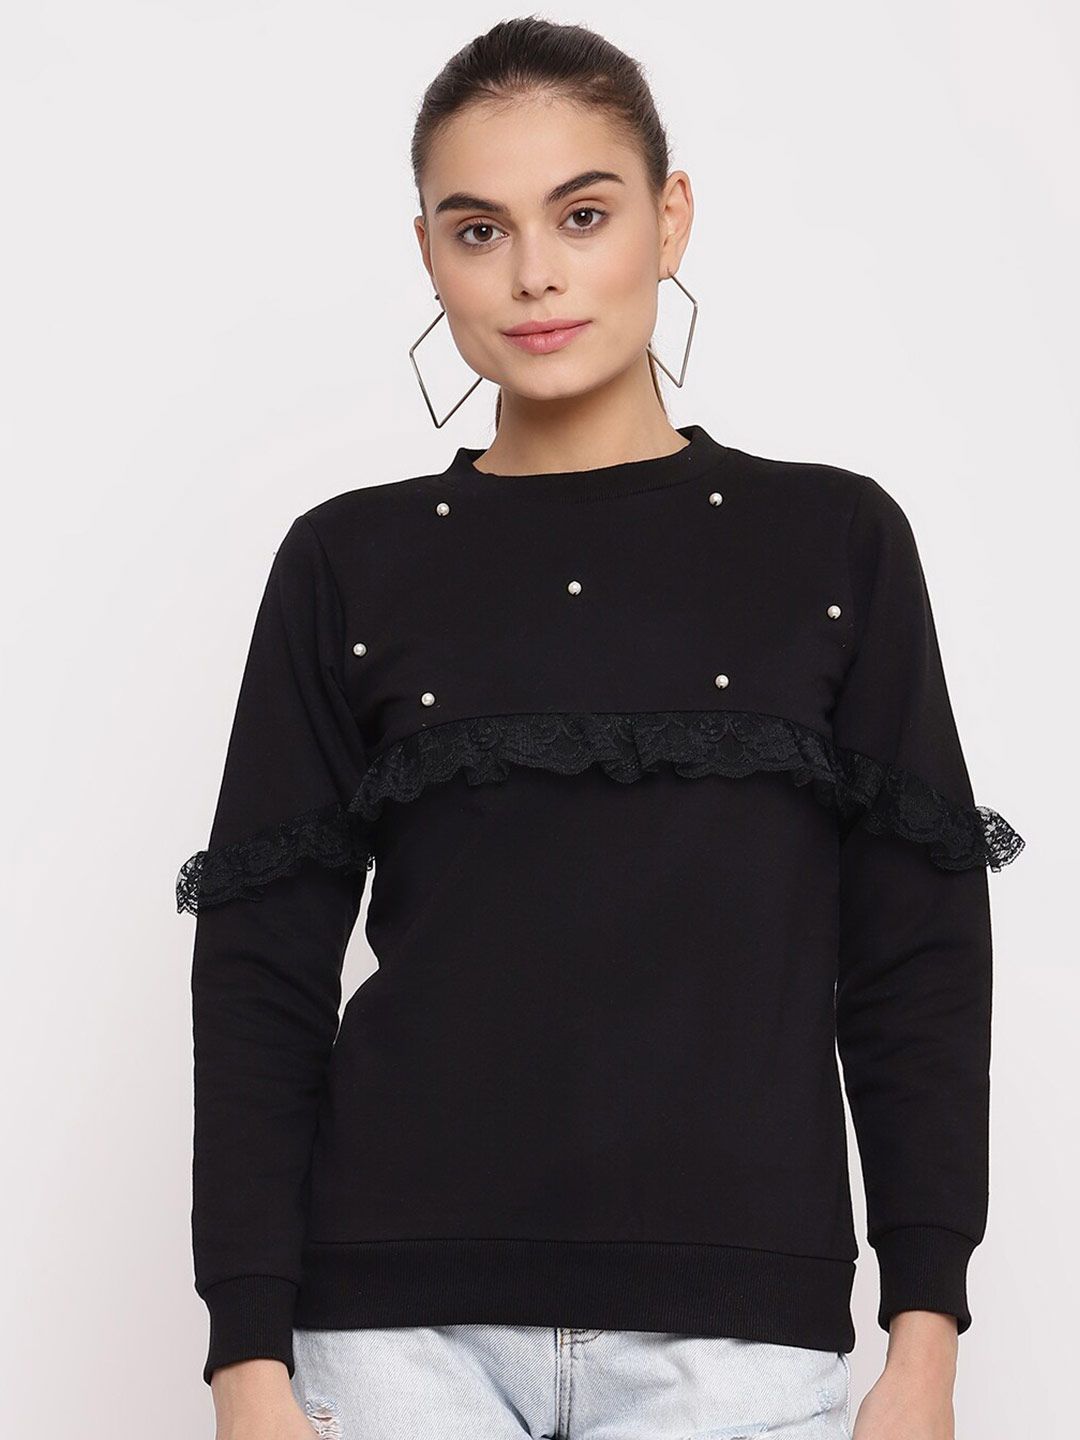 The Vanca Women Black Sweatshirt Price in India